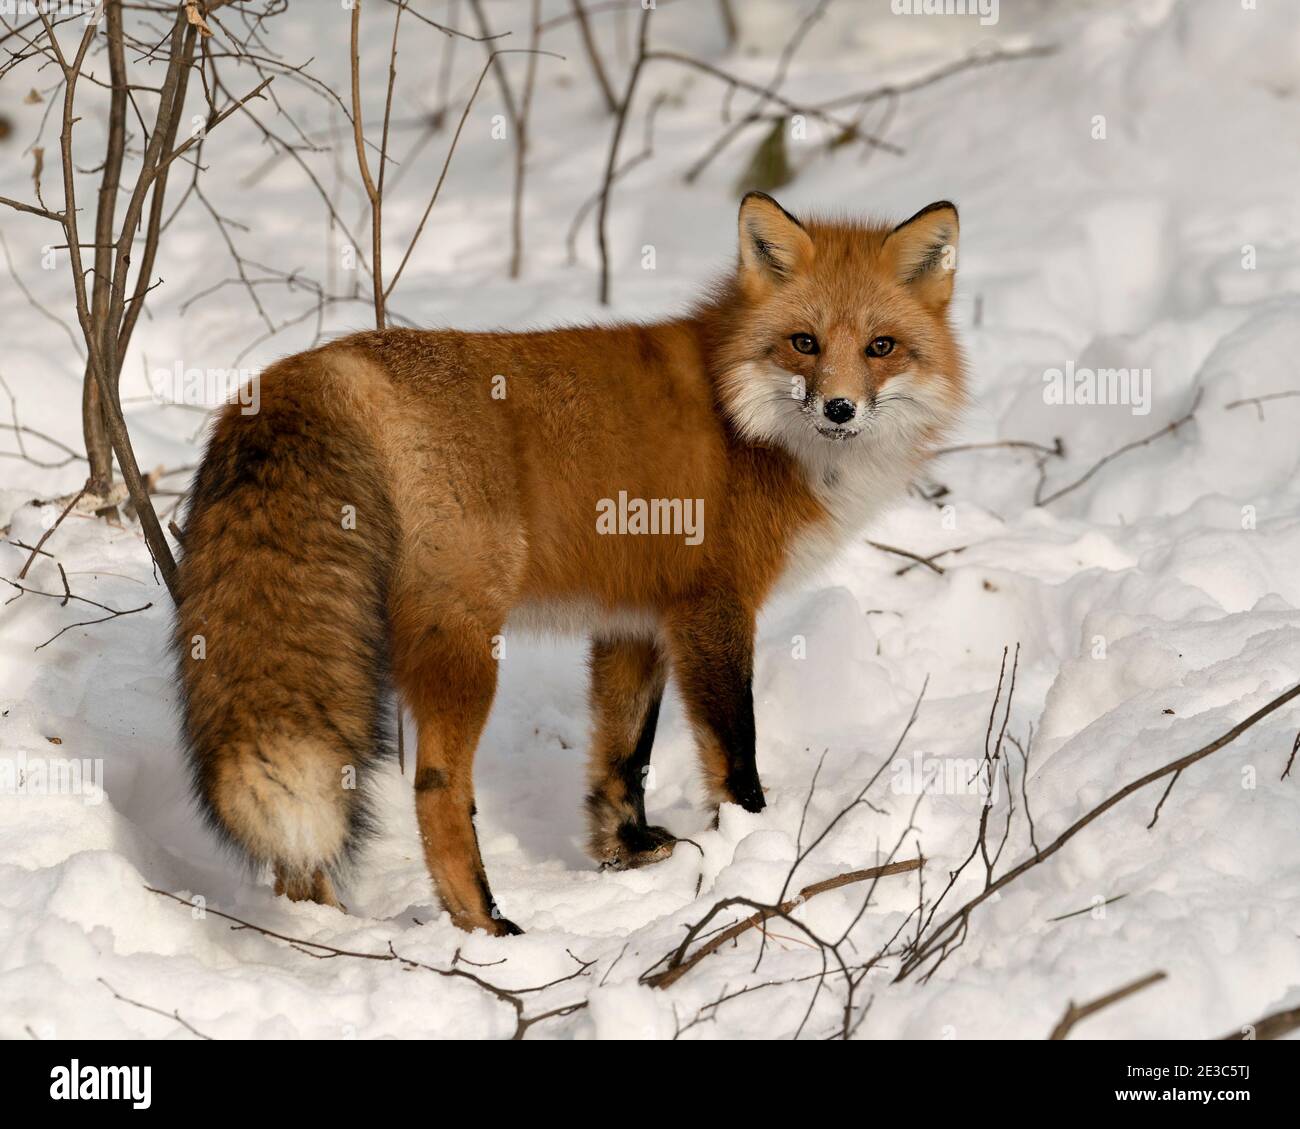 Volpe rossa guardando la macchina fotografica nella stagione invernale nel suo habitat con neve e rami sfondo mostra folgorosa coda di volpe, pelliccia. Immagine FOX. Immagine. Foto Stock